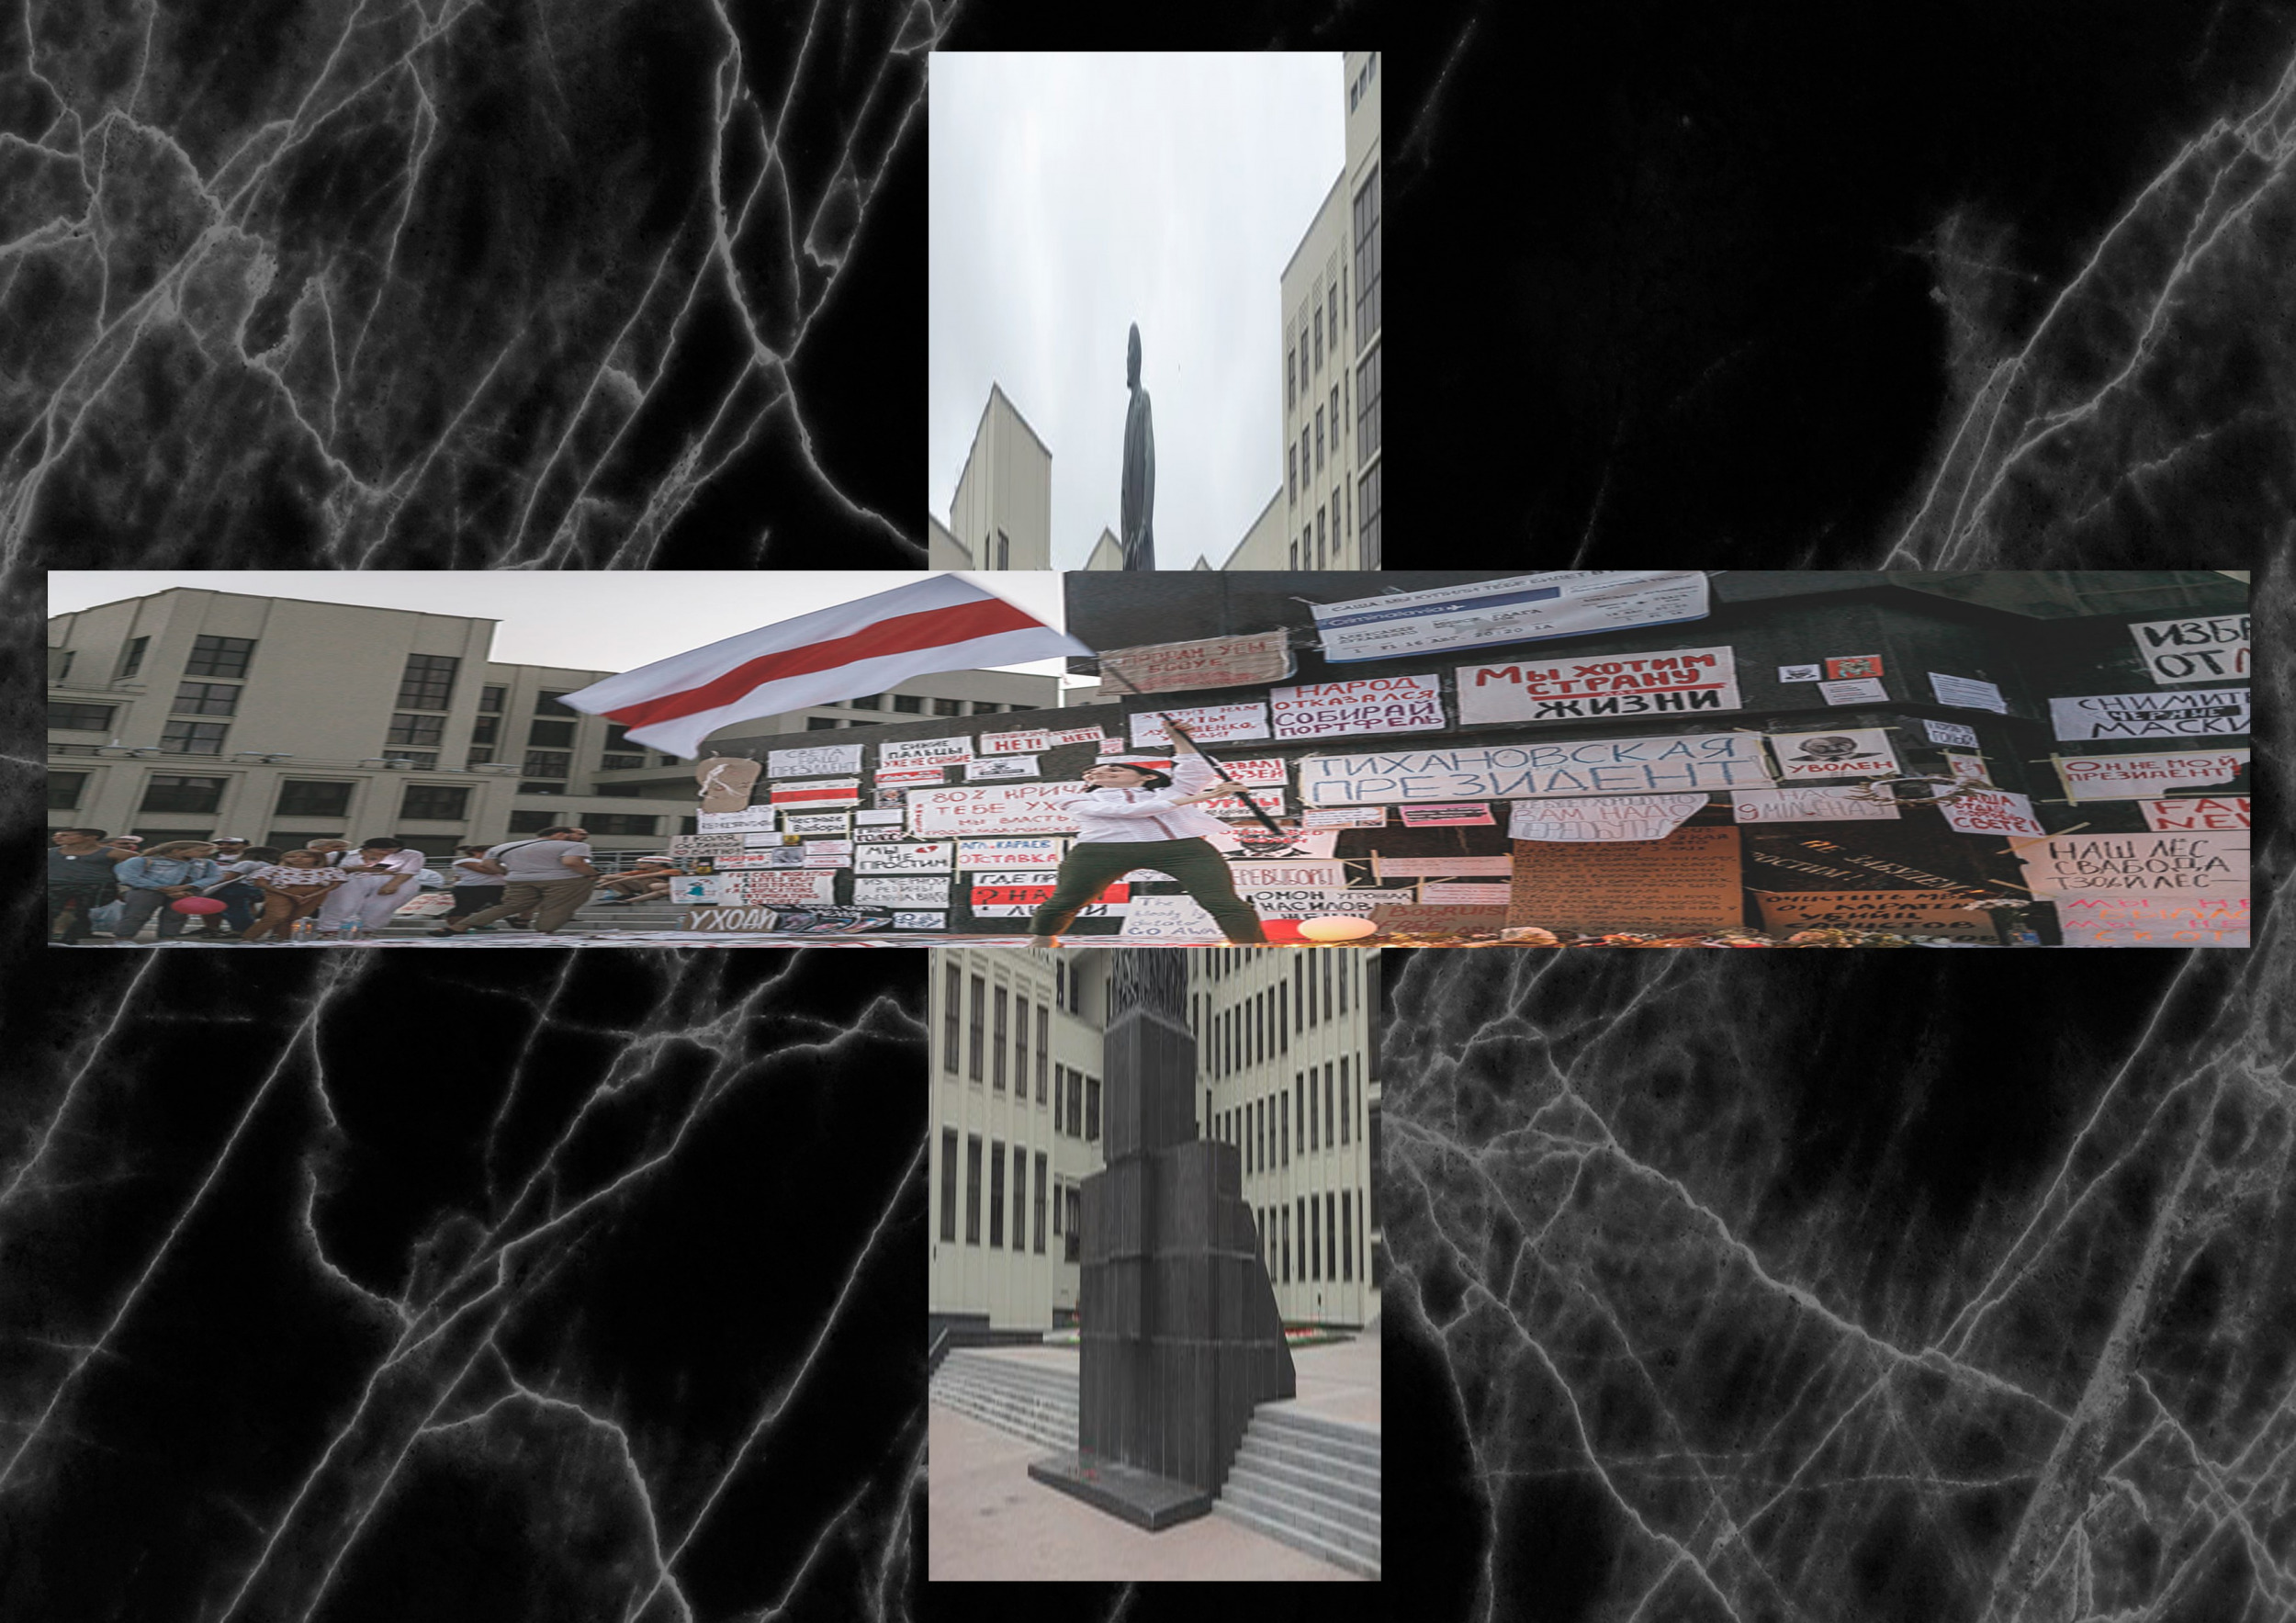 Czarne tło przerywane białymi liniami. Na środku dwa zdjęcia złożone w krzyż. Na zdjęciu pionowym widać szary pomnik, przysłonięty zdjęciem poziomym, które przedstawia osobe wymachującą flagą białoruską.